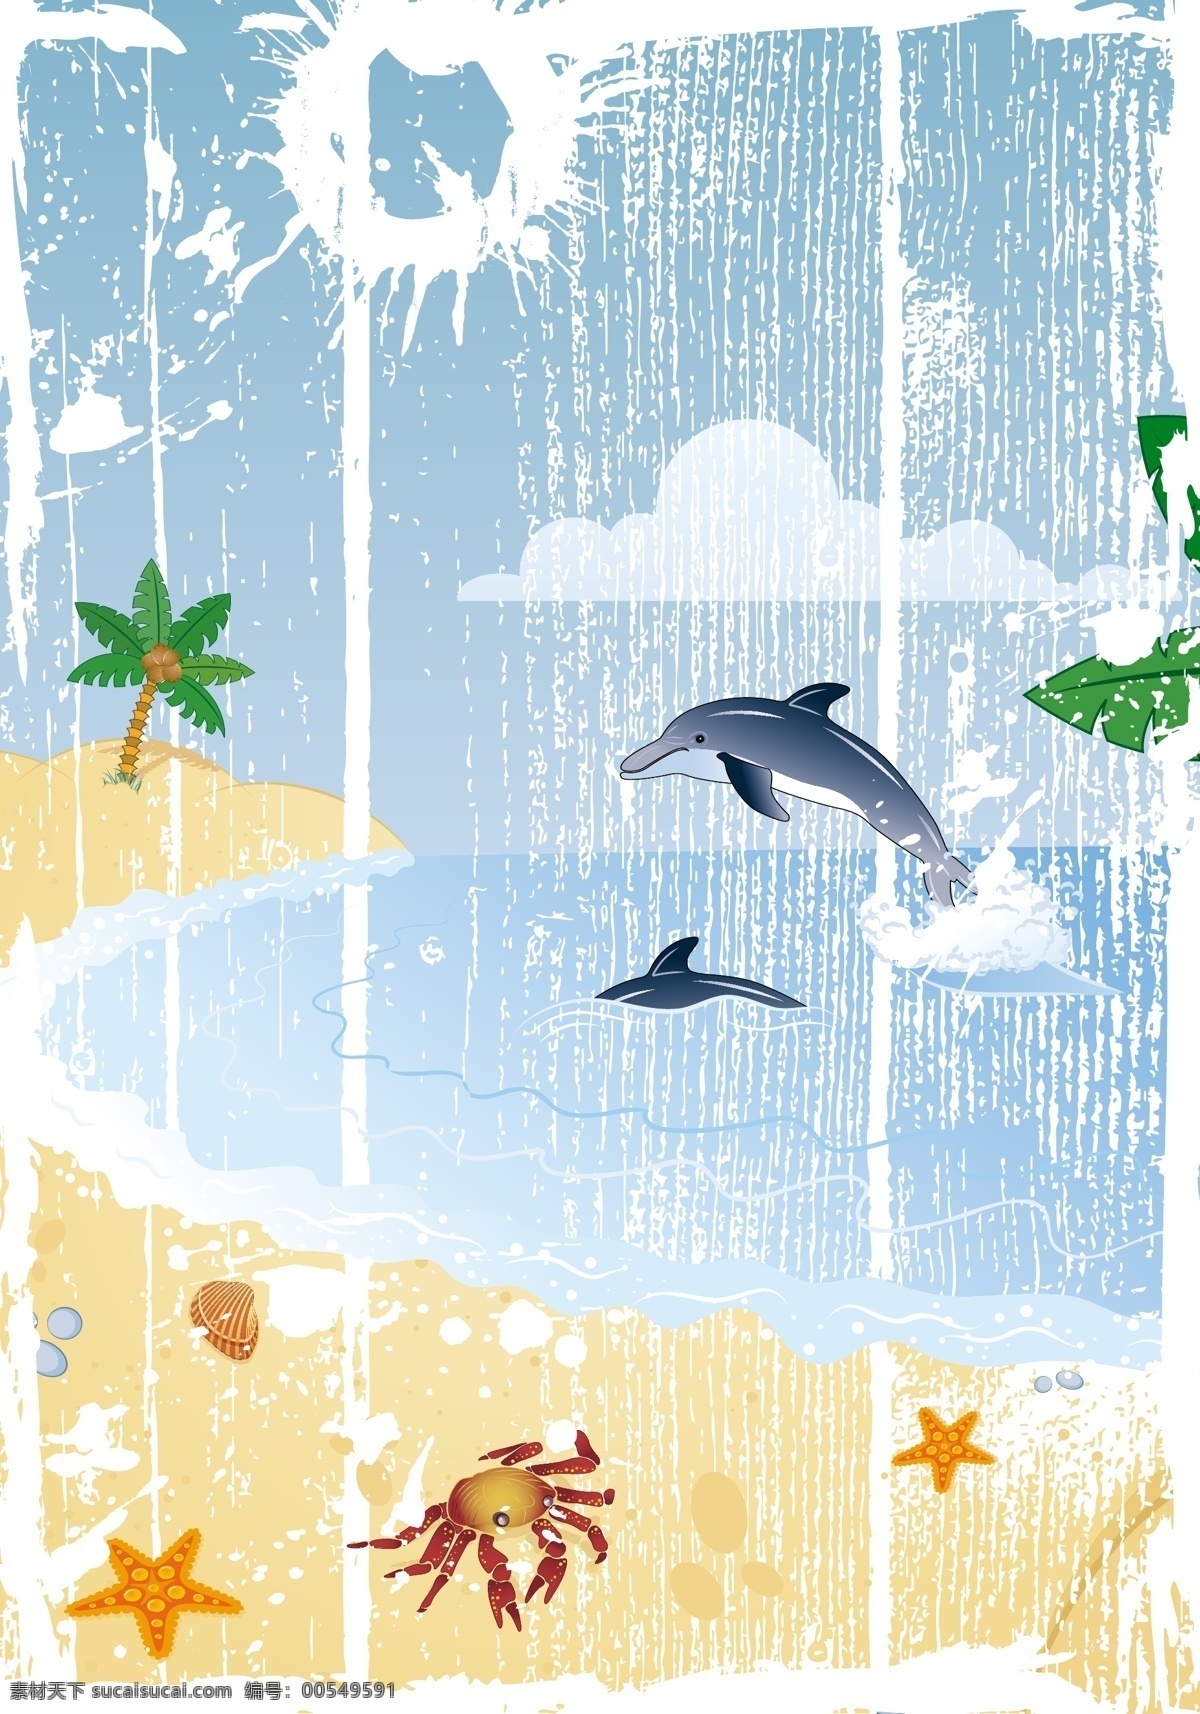 卡通 海边 风光 矢量 款 eps格式 沙滩 椰子树 云朵 海豚 海鸥 怀旧 蟹 海星 矢量素材 文化艺术 舞蹈音乐 eps矢量 矢量图库